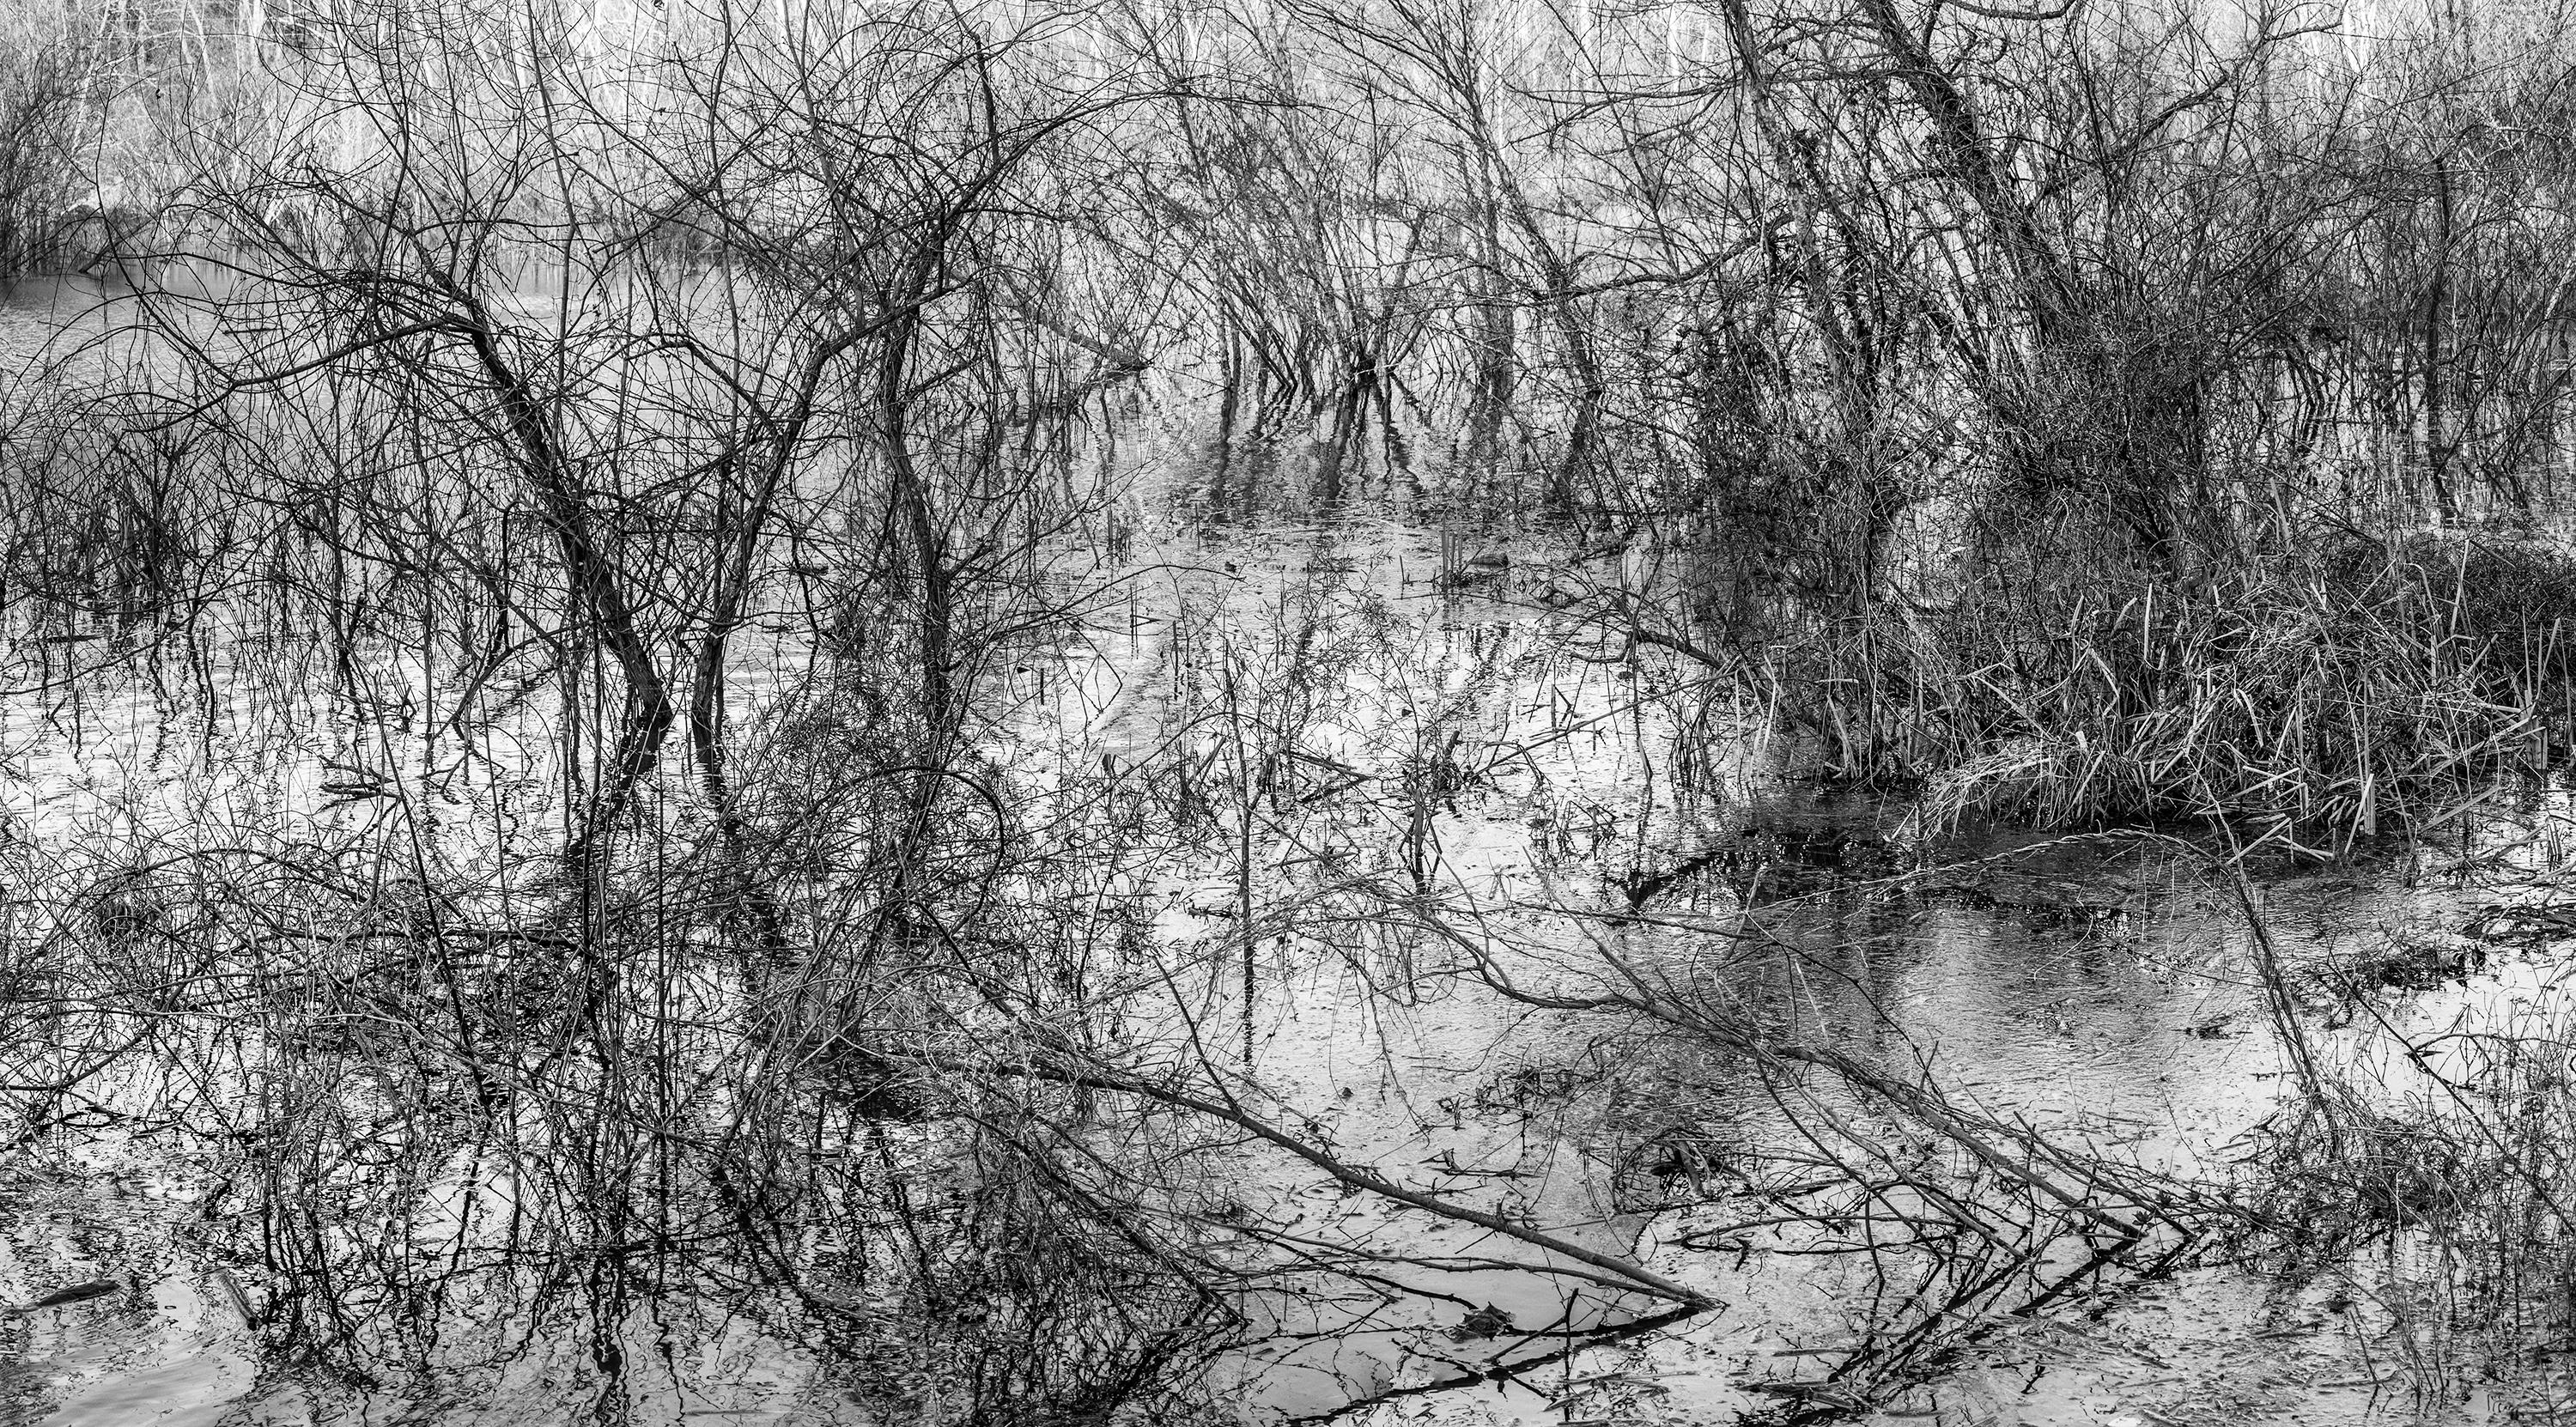 Richard Skoonberg Landscape Photograph – „River-Radierung“ – Schwarz-Weiß – Landschaftsfotografie – Eliot Porter